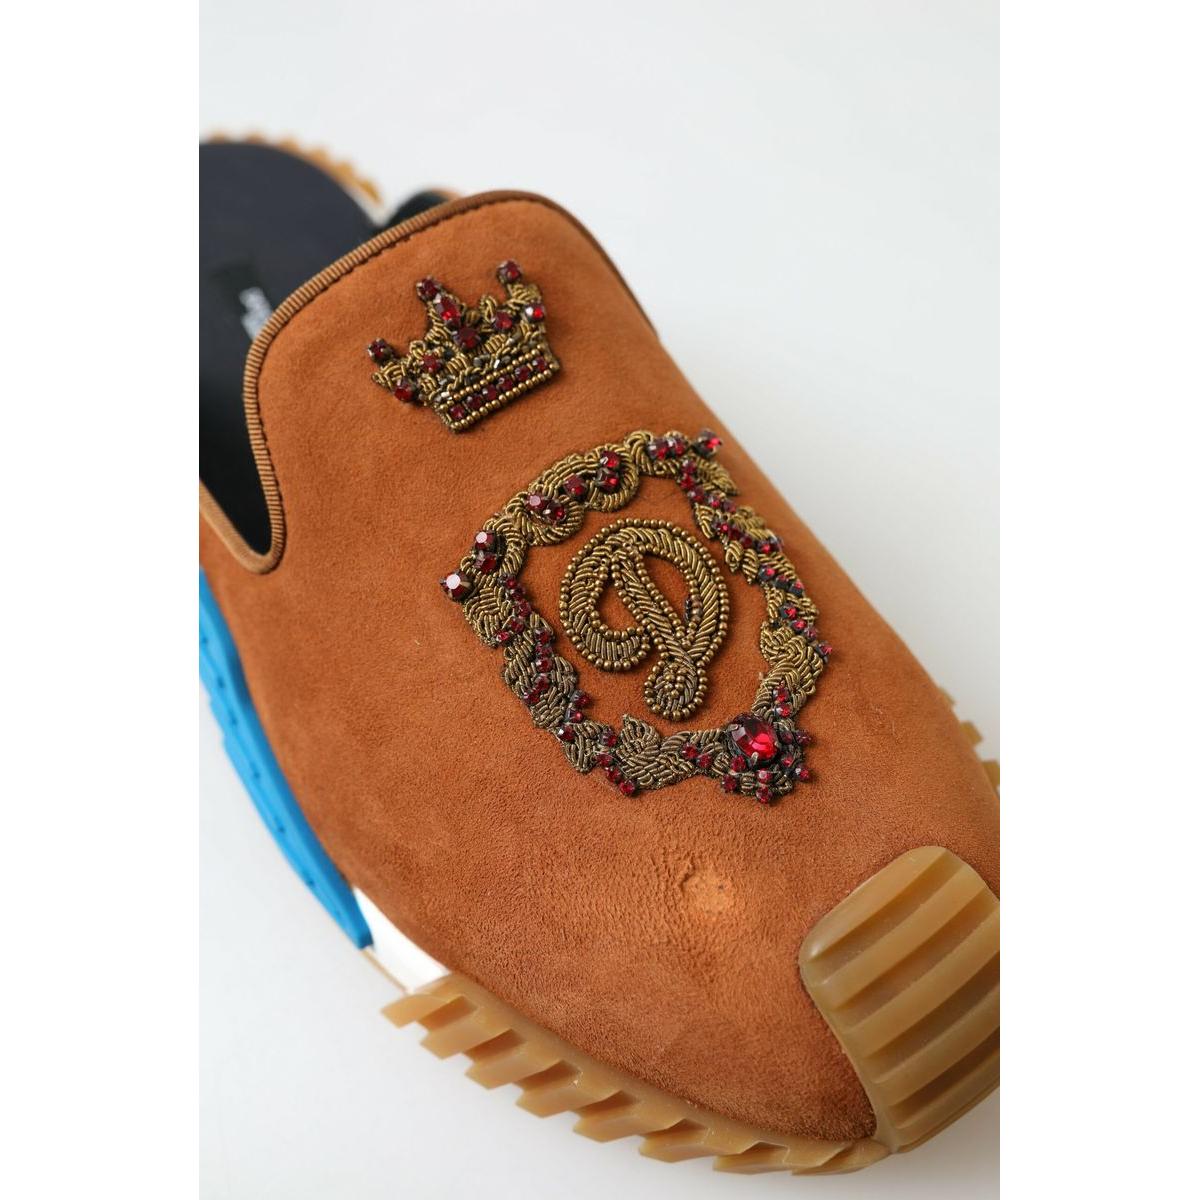 Dolce & Gabbana Elegant Multicolor NS1 Slide Sandals brown-suede-crown-logo-ns1-slides-sandals 465A7672-scaled-8d965548-1b9.jpg